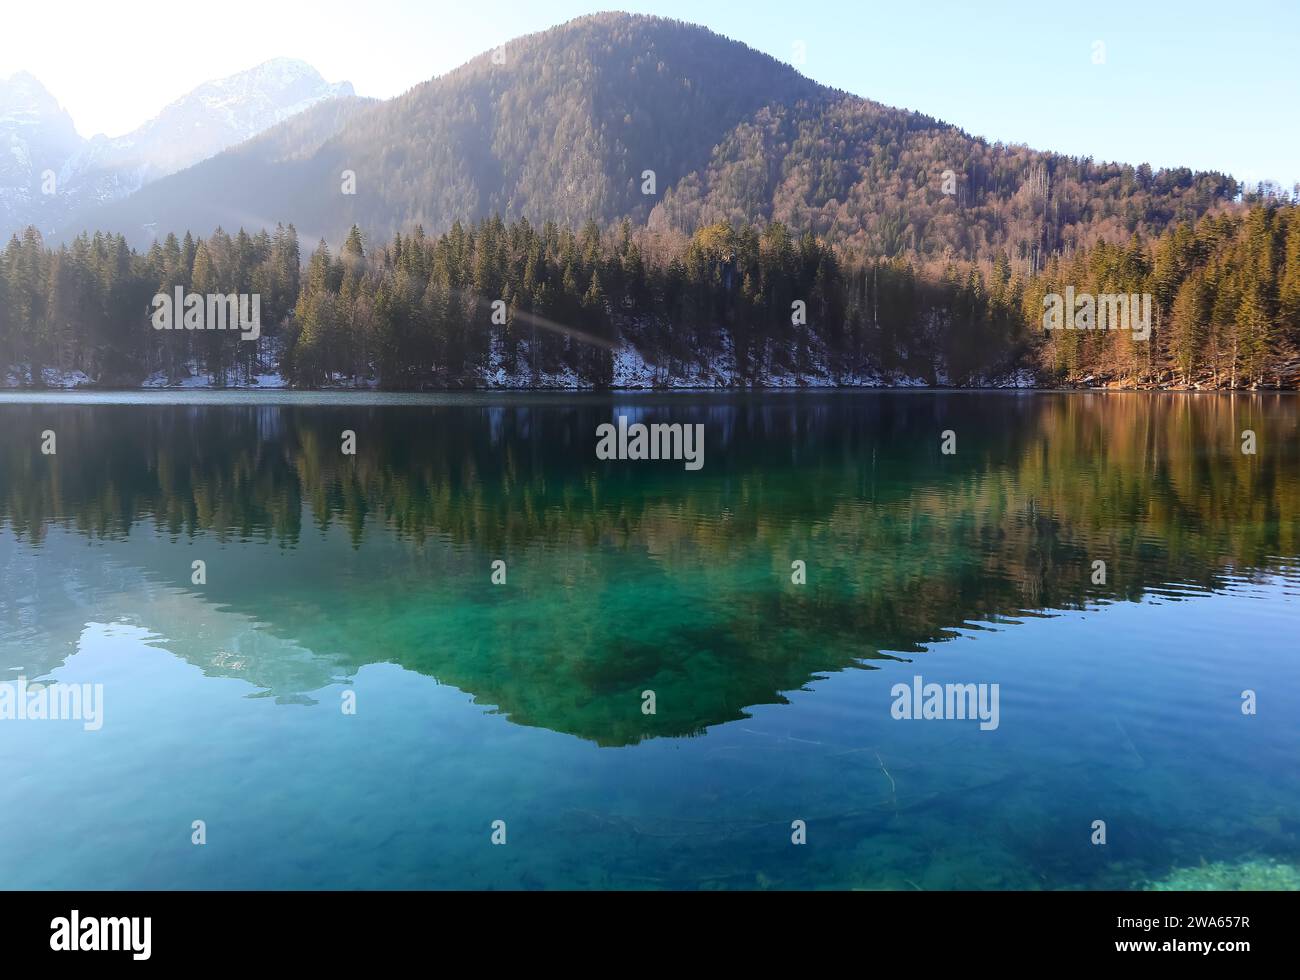 Panorama de montagne enchanteur avec les Alpes italiennes en hiver et le lac d'origine glaciaire dans lequel les arbres se reflètent Banque D'Images